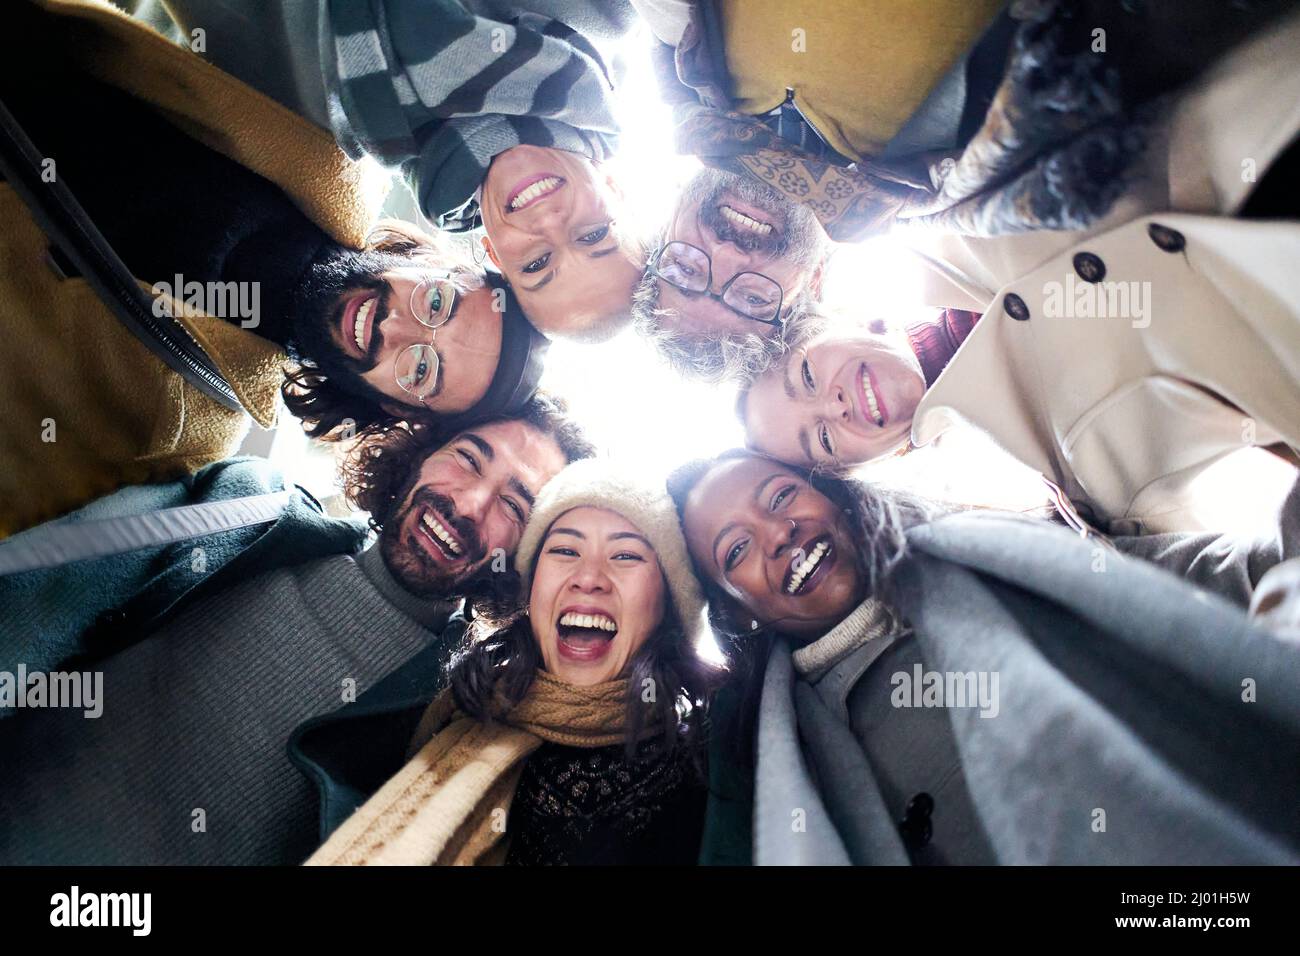 Niedriger Winkel Kreis einer fröhlichen vielfältigen Gruppe von Menschen verschiedener Rassen ein Alter Blick auf die Kamera glücklich zusammen Spaß haben Stockfoto